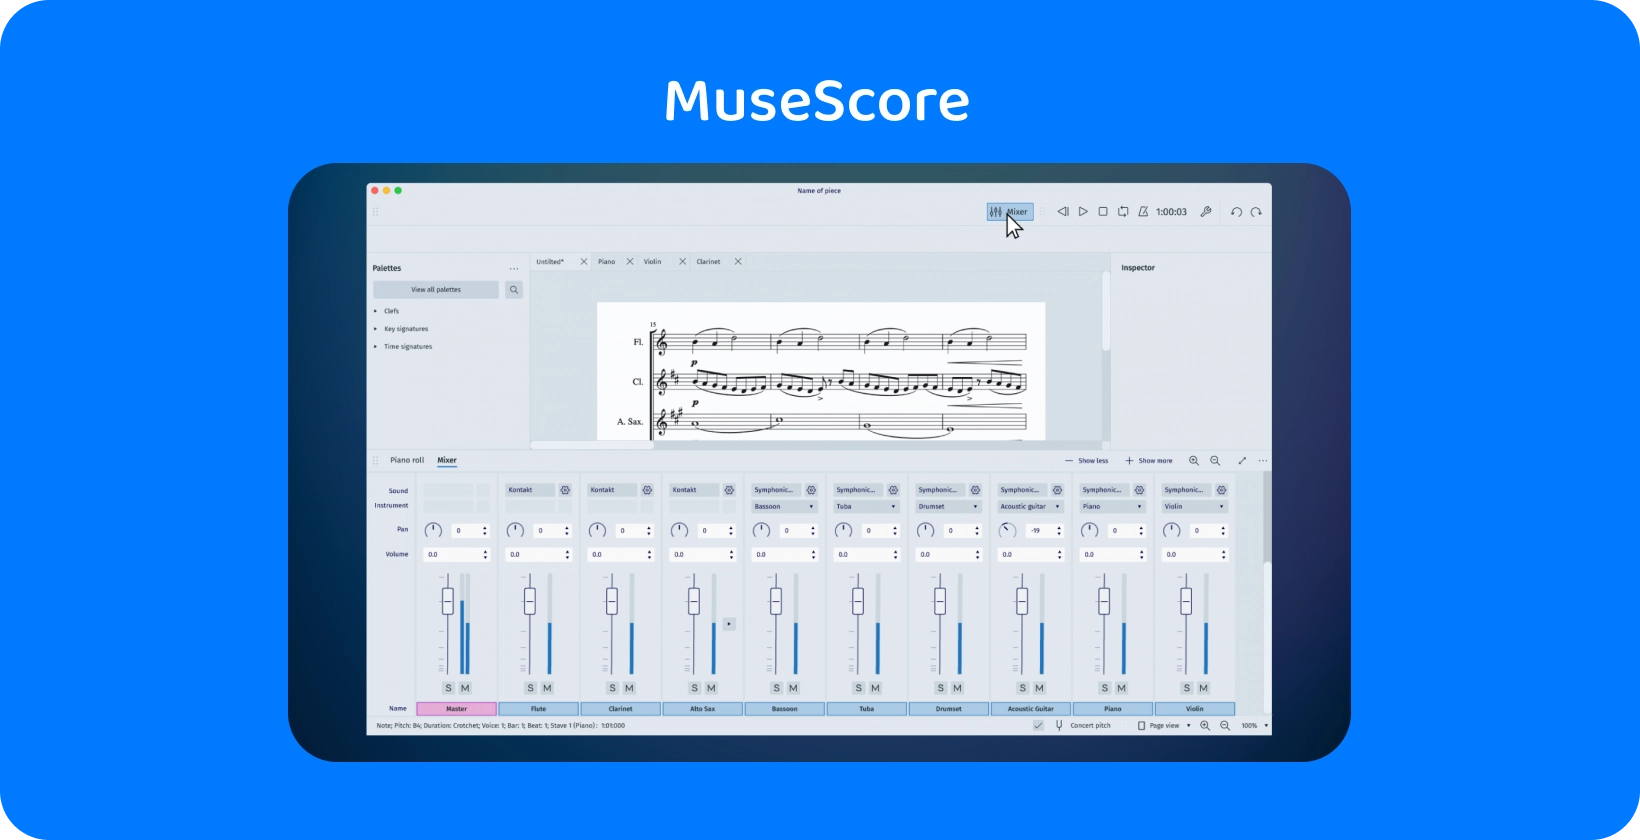 Интерфейс MuseScore, демонстрирующий инструмент микшера для транскрипции звука, необходимый для создателей музыки.